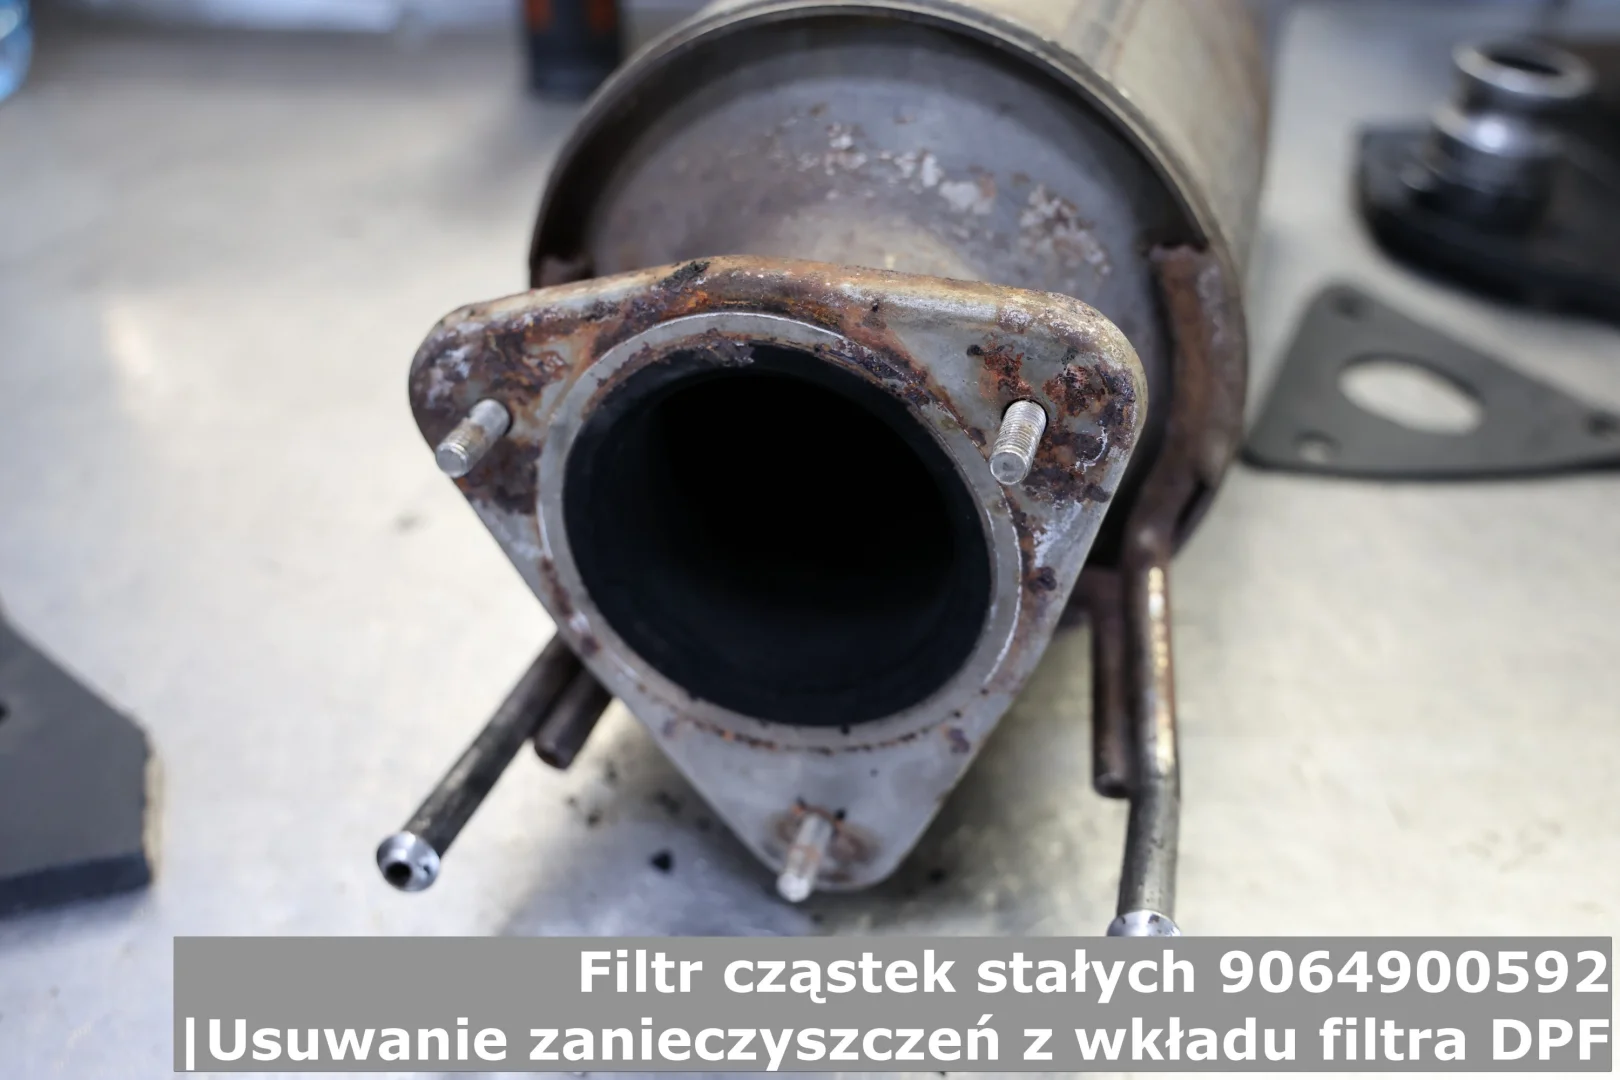 Filtr cząstek stałych 9064900592 | Usuwanie zanieczyszczeń z wkładu filtra DPF